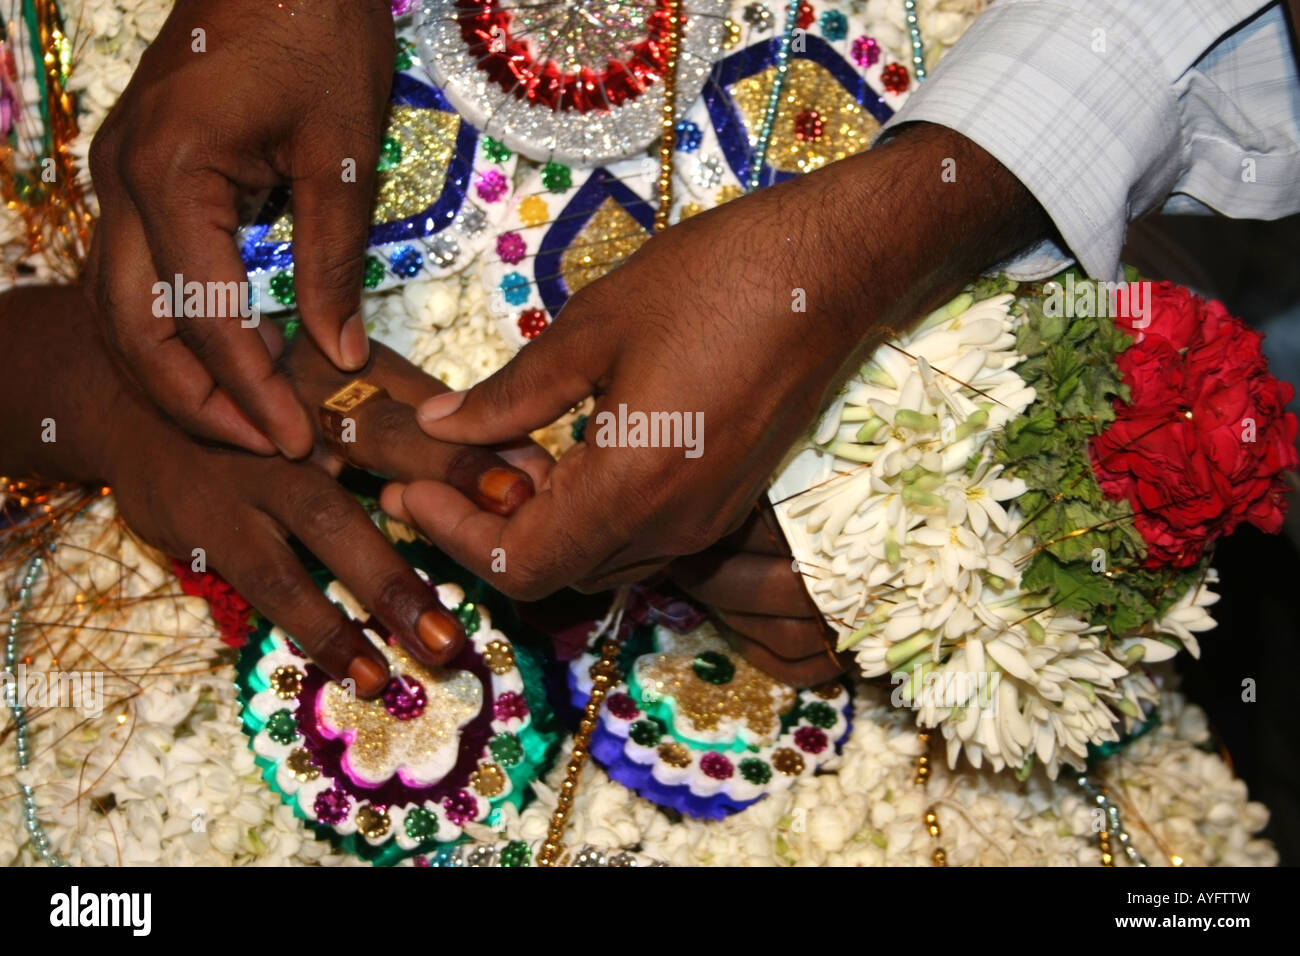 இந்த விரலில் வெள்ளி மோதிரம் அணிவது உங்களுக்கு பல அற்புத நன்மைகளை  வழங்குமாம்... ட்ரை பண்ணுங்க! | Spiritual Benefits of Wearing Silver Ring in  Your Little Finger in Tamil ...